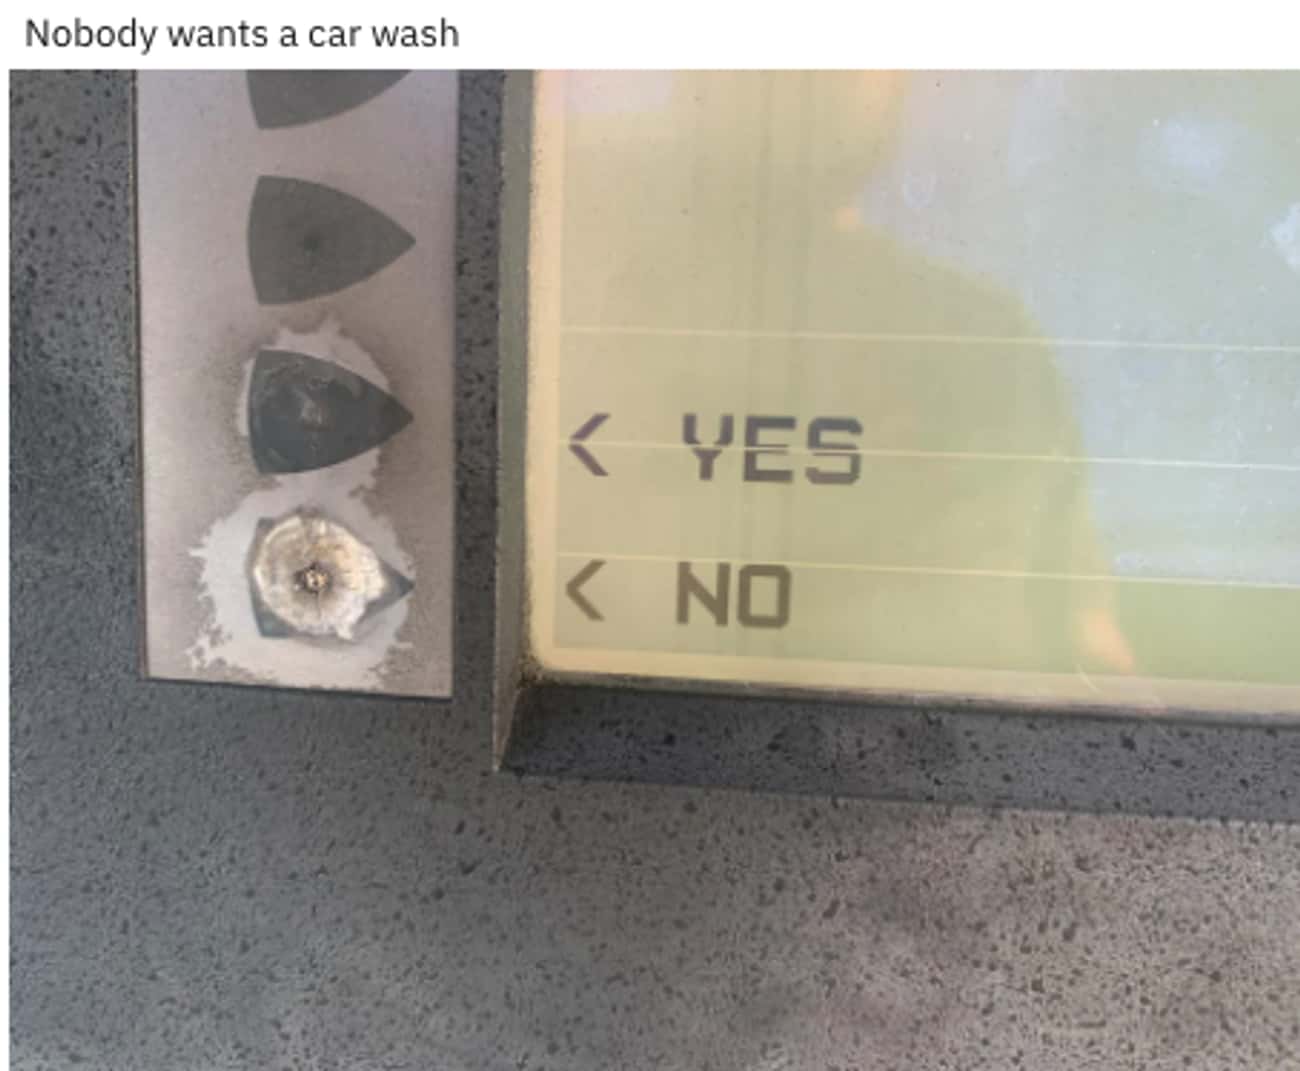 No Car Wash Please